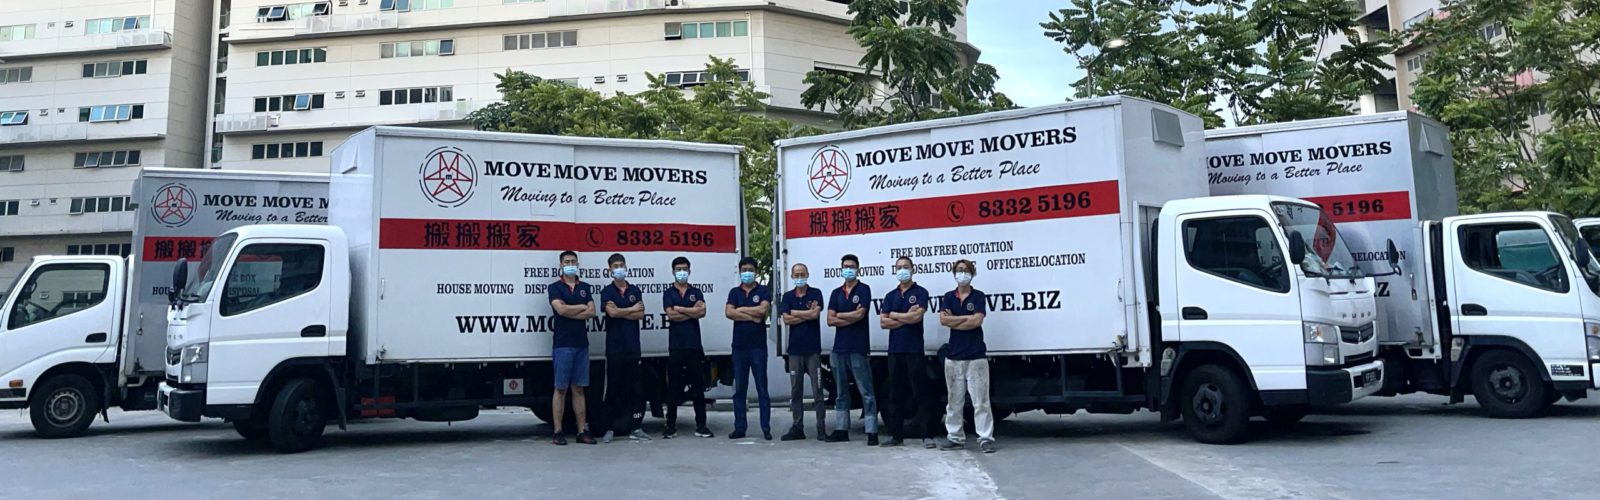 Move Move Mover